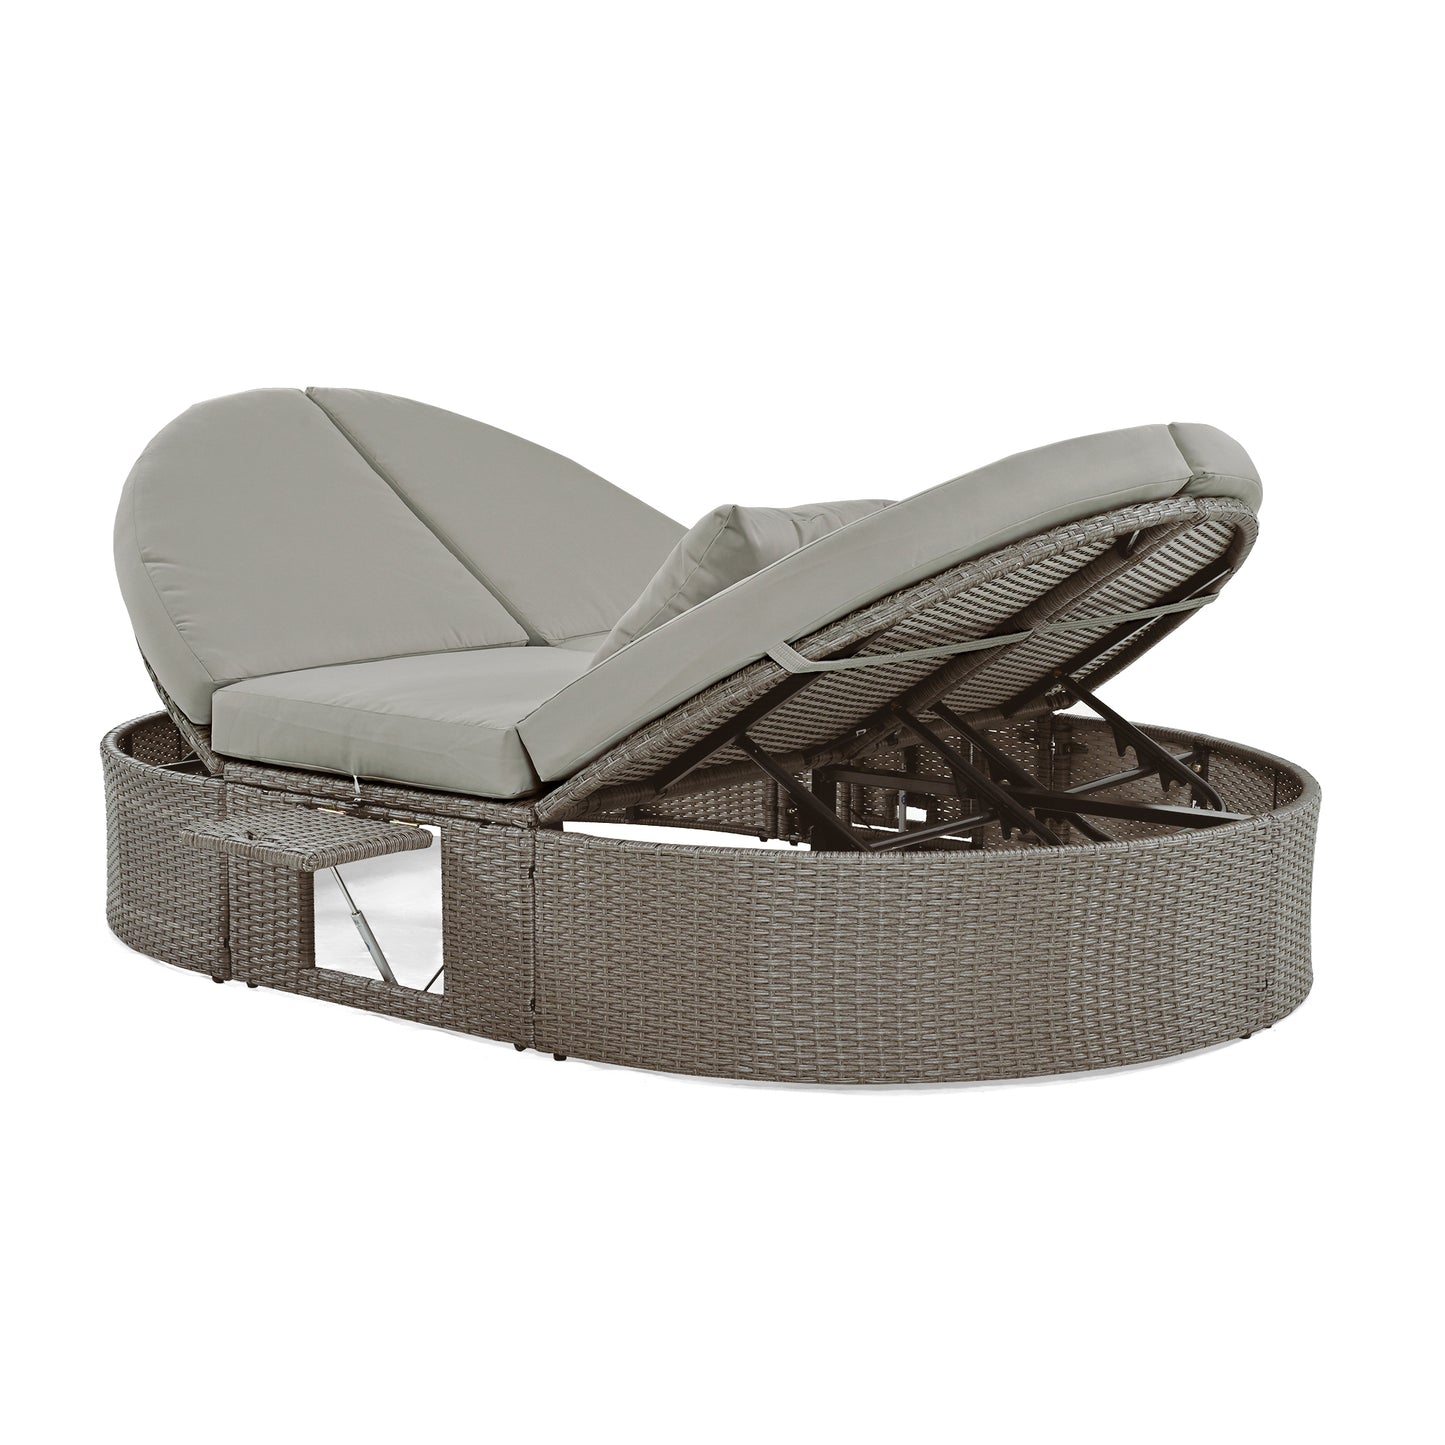 TOPMAX Lit de bronzage d'extérieur pour 2 personnes avec coussins et oreillers, chaise longue inclinable de jardin en rotin avec dossiers réglables et plateaux à tasses pliables pour pelouse, bord de piscine, gris